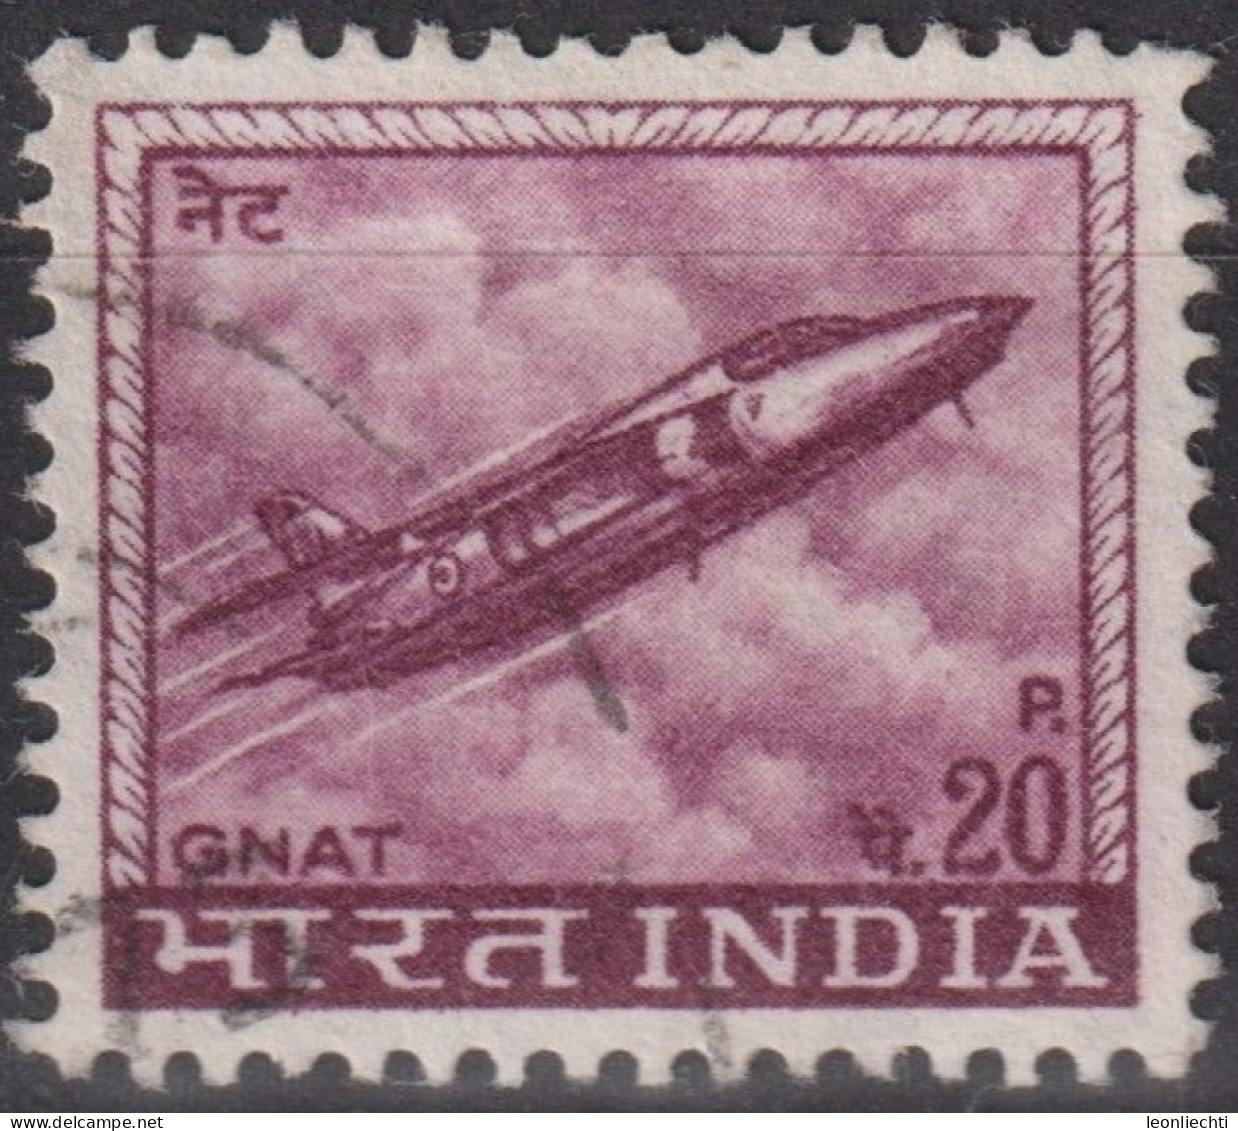 1967 Indien ° Mi:IN 436X, Sn:IN 413, Yt:IN 226, Hindustan Aircraft Industries Ajeet Jet Fighter - Gebruikt